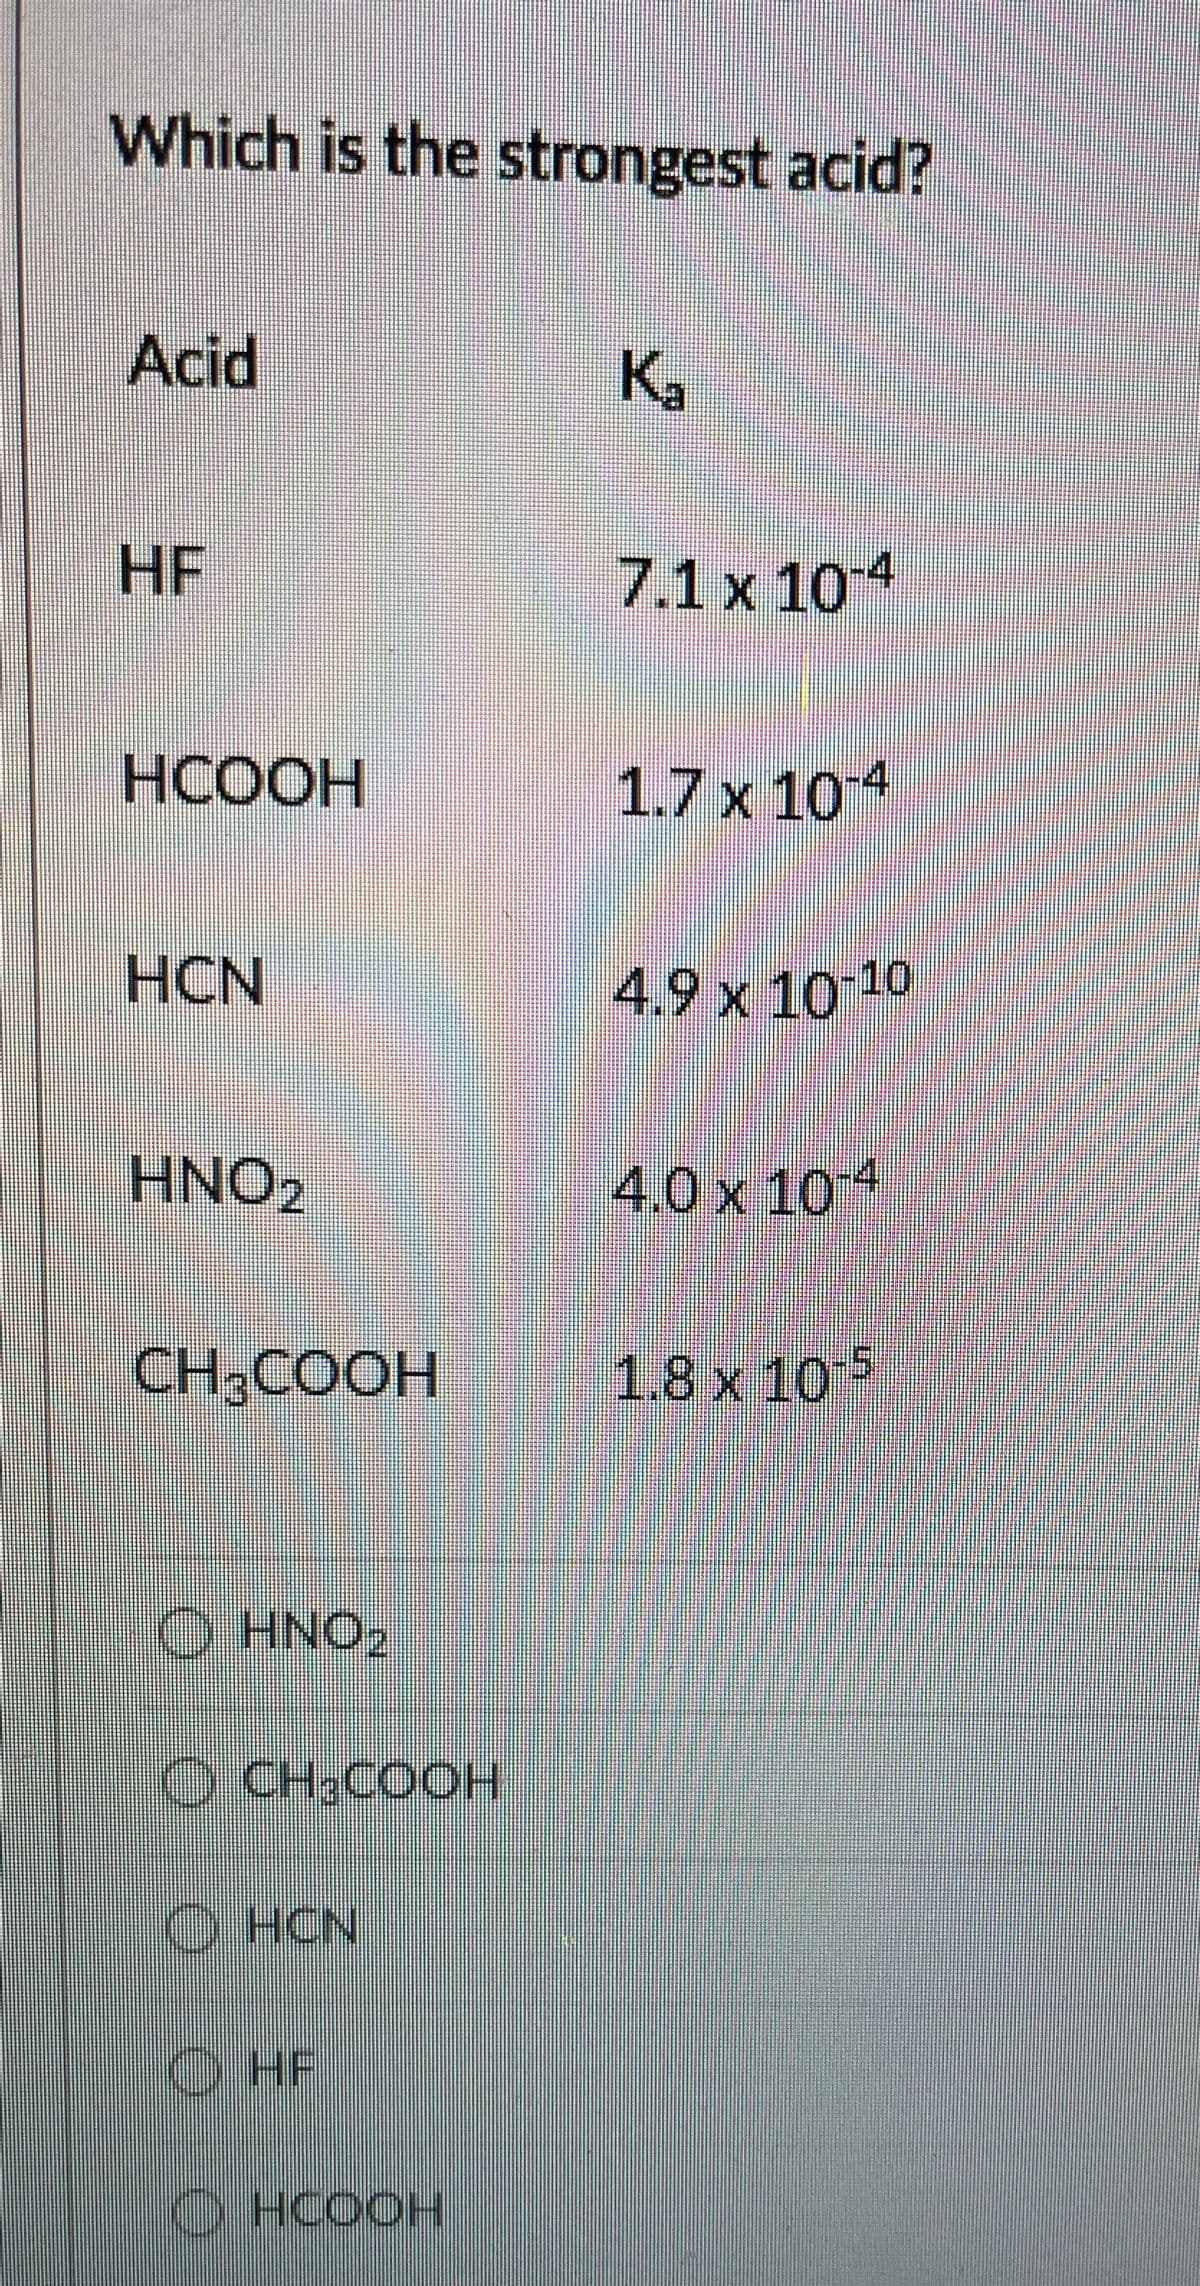 Which is the strongest acid?
Acid
K.
HF
7.1 x 104
НСООН
1.7 x 104
HCN
4.9 x 10 10
HNO2
4.0 x 104
CH,COOH
1.8x 10 5
O HNO2
O CH;COOH
O HCN
O HF
O HCOOH
